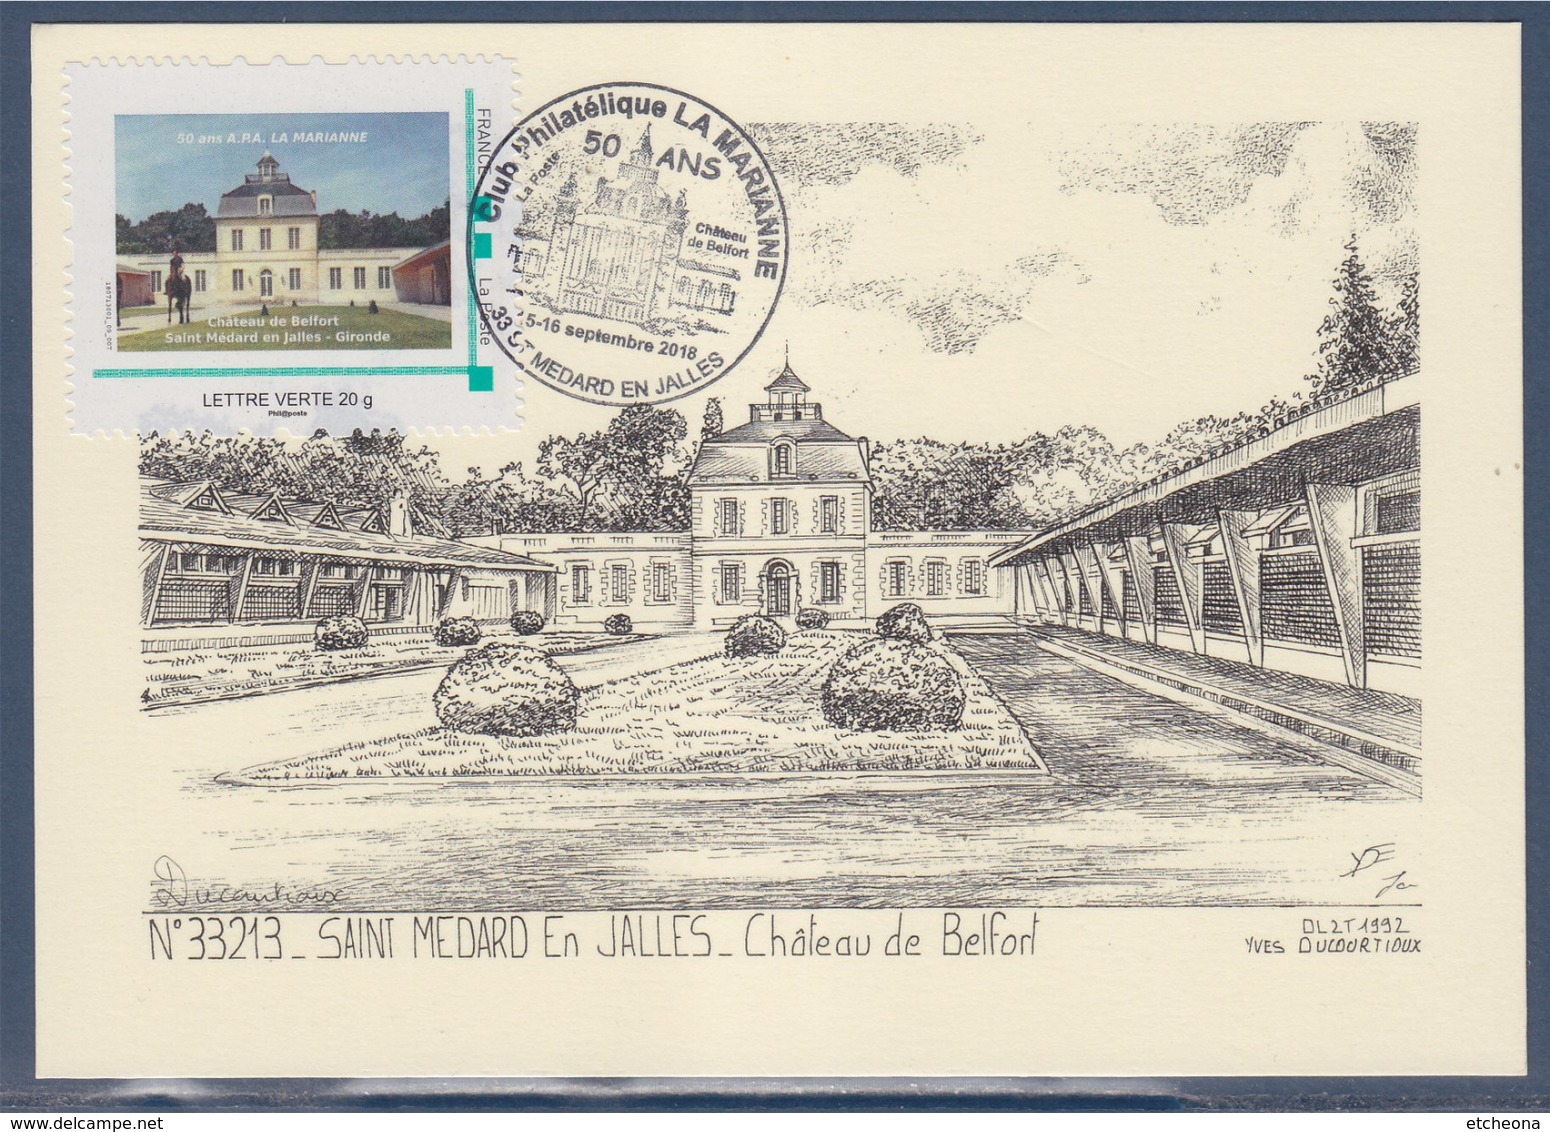 Château De Belfort Saint Médard En Jalles Gironde 50 Ans Club Philatélique La Marianne 15-16.9.18 Cadre Philaposte LV - Briefe U. Dokumente